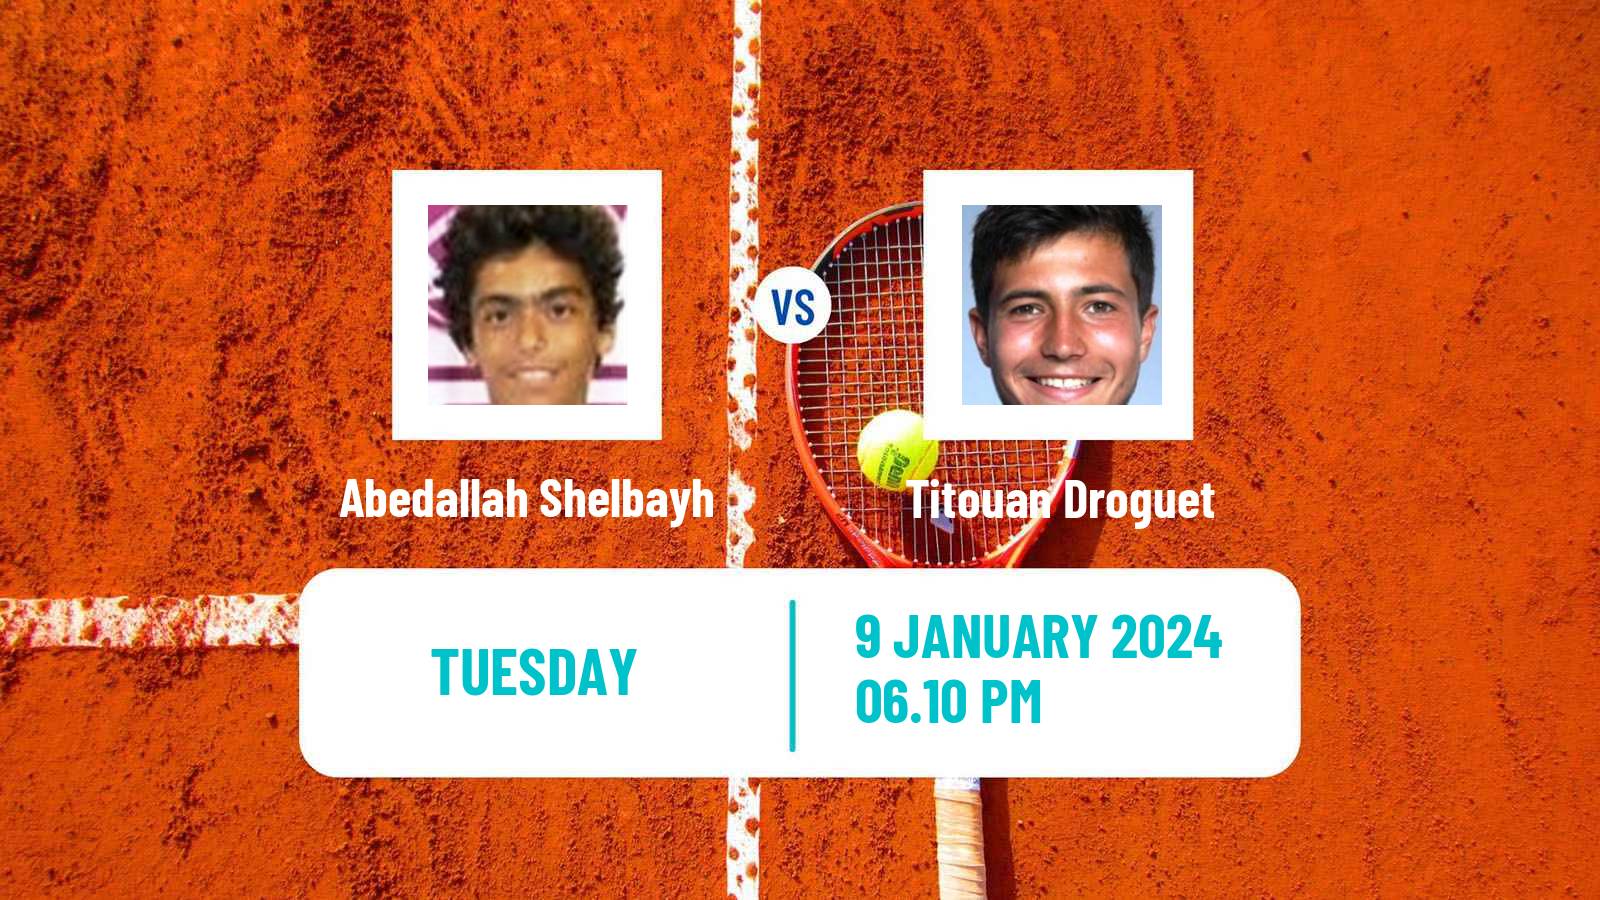 Tennis ATP Australian Open Abedallah Shelbayh - Titouan Droguet